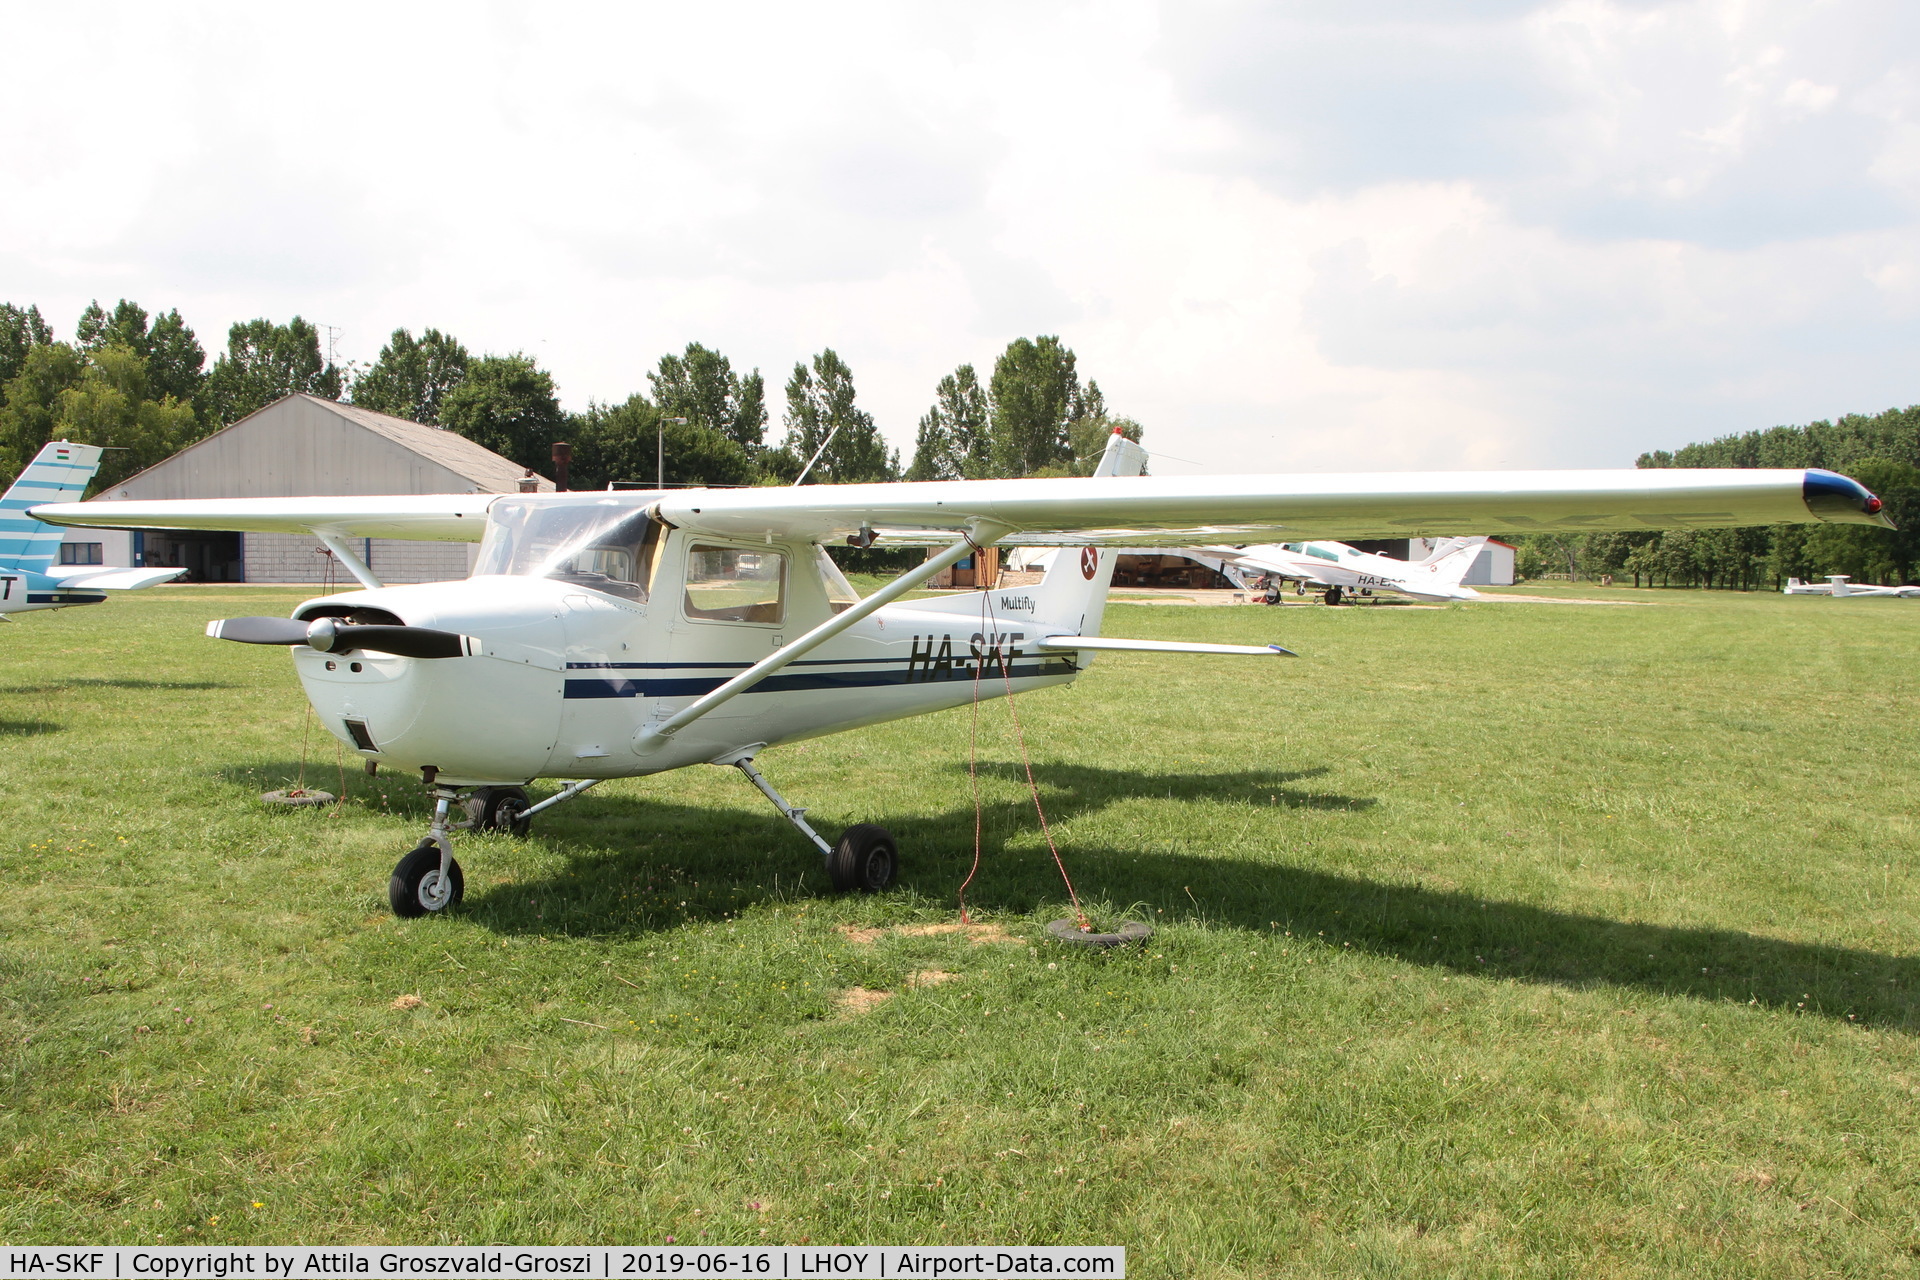 HA-SKF, 1975 Cessna 150M C/N 15077223, LHOY - Öcsény Airport, Hungary